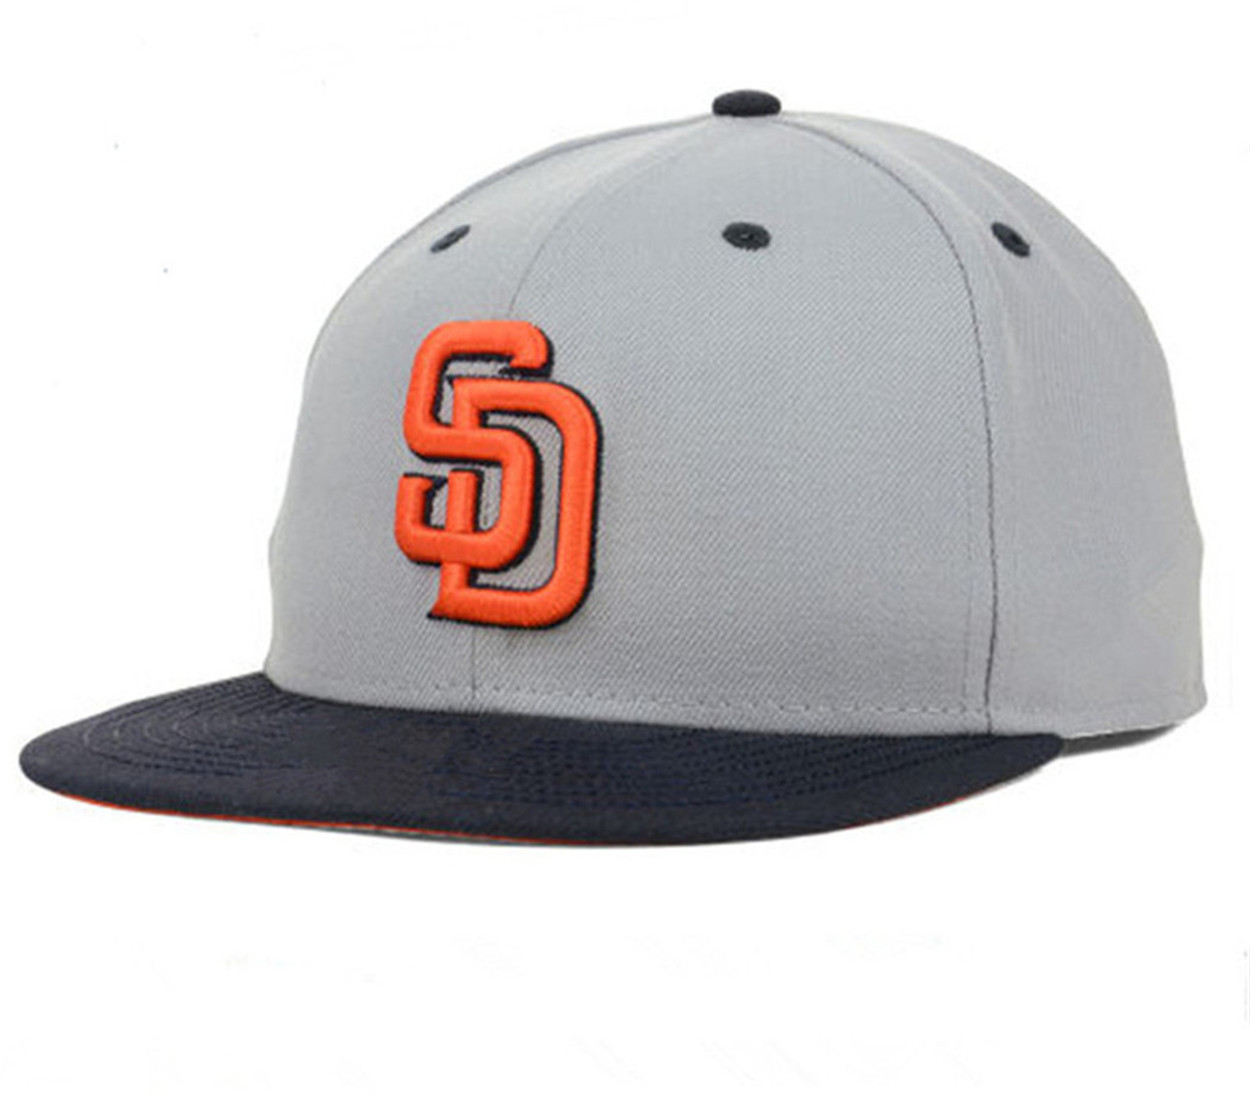 Новая бейсбольная команда Сан-Диего Snapback Full Complet Caps Summer As SD Письмо Gorras Bones Мужчины Женщины. Собственные спортивные спортивные шляпы.